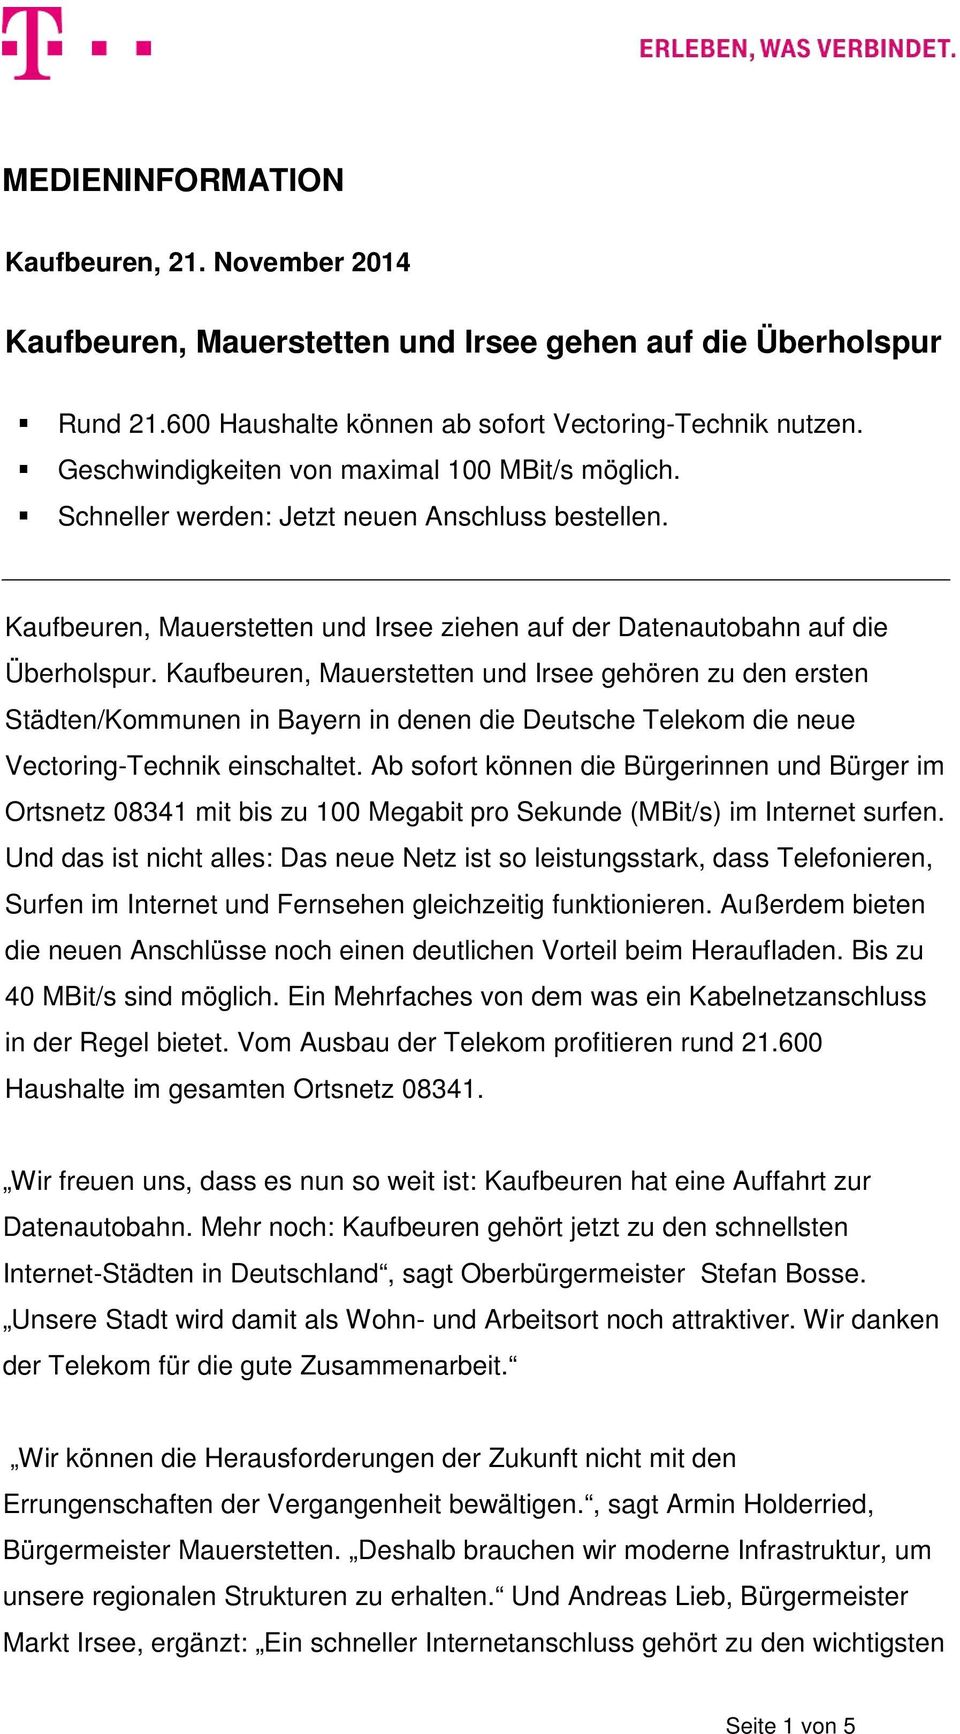 Kaufbeuren, Mauerstetten und Irsee gehören zu den ersten Städten/Kommunen in Bayern in denen die Deutsche Telekom die neue Vectoring-Technik einschaltet.